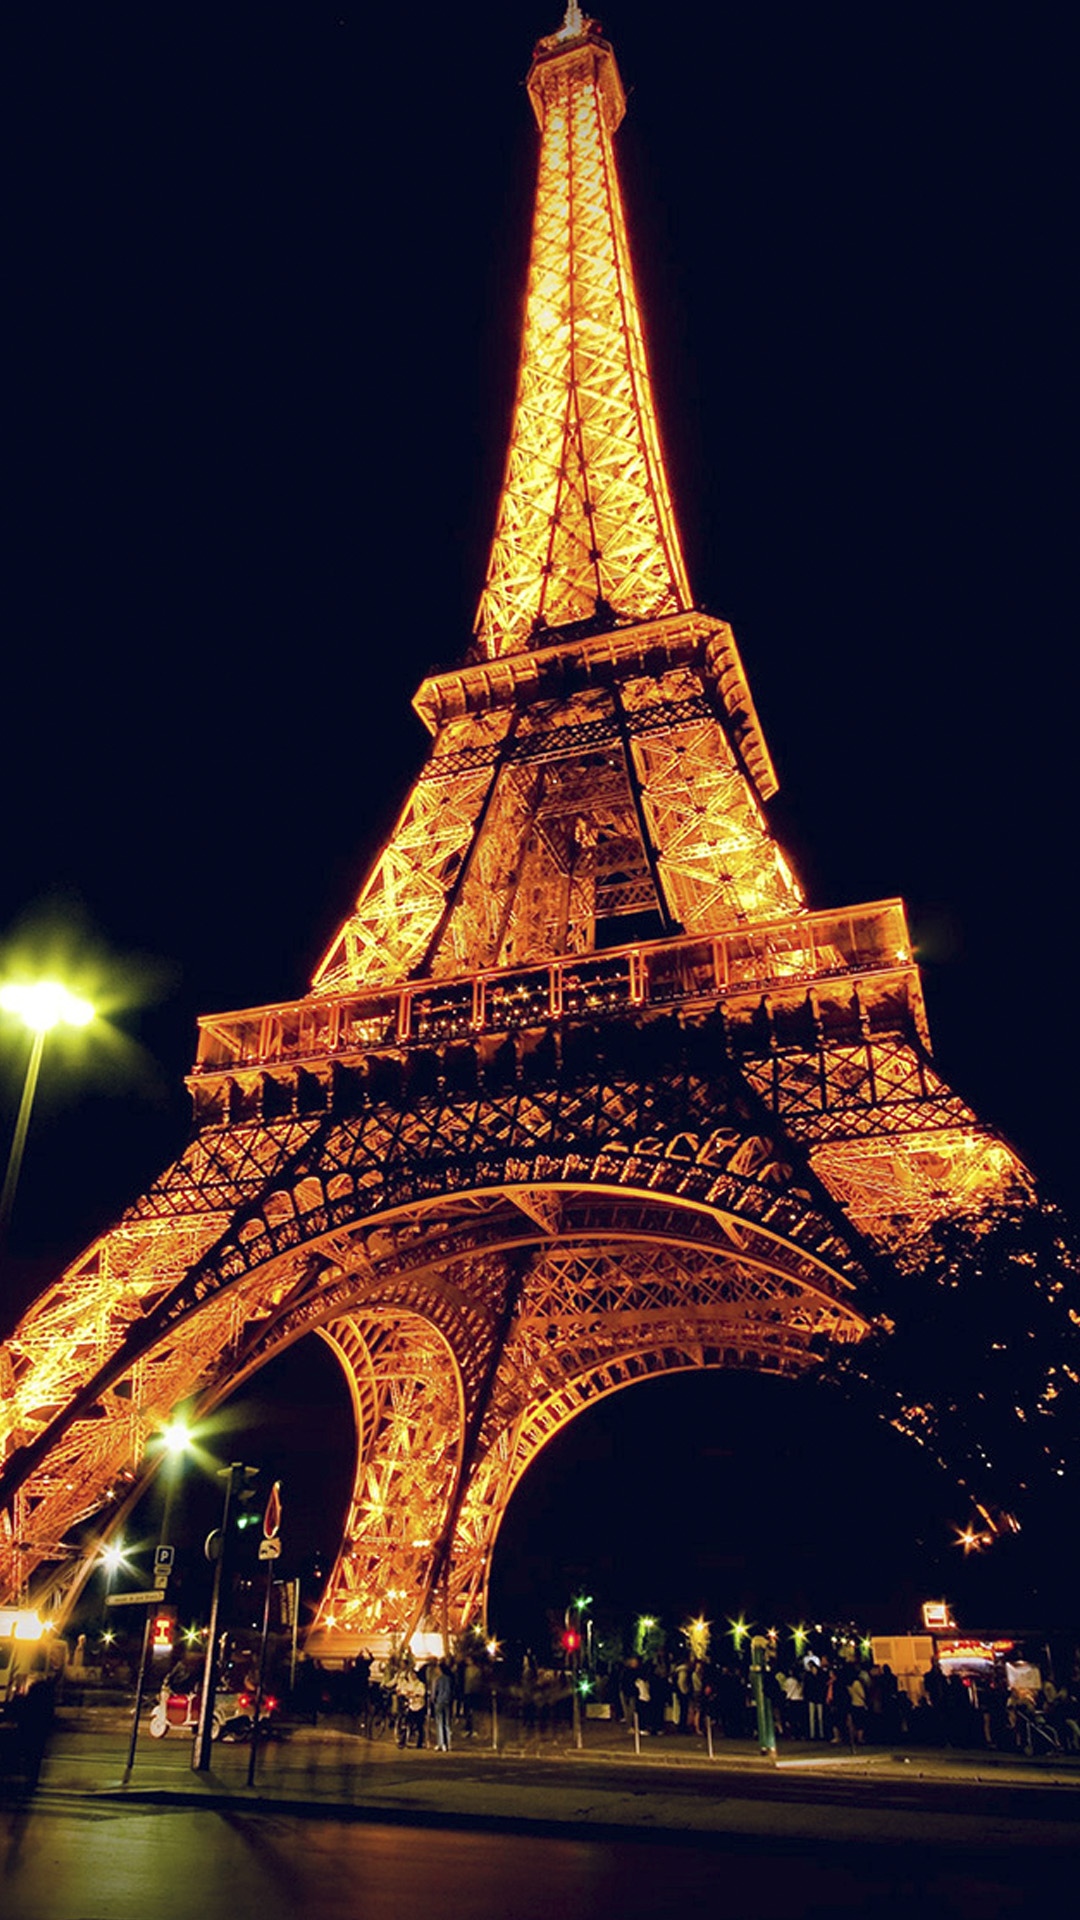 那天夜里,我看见了巴黎